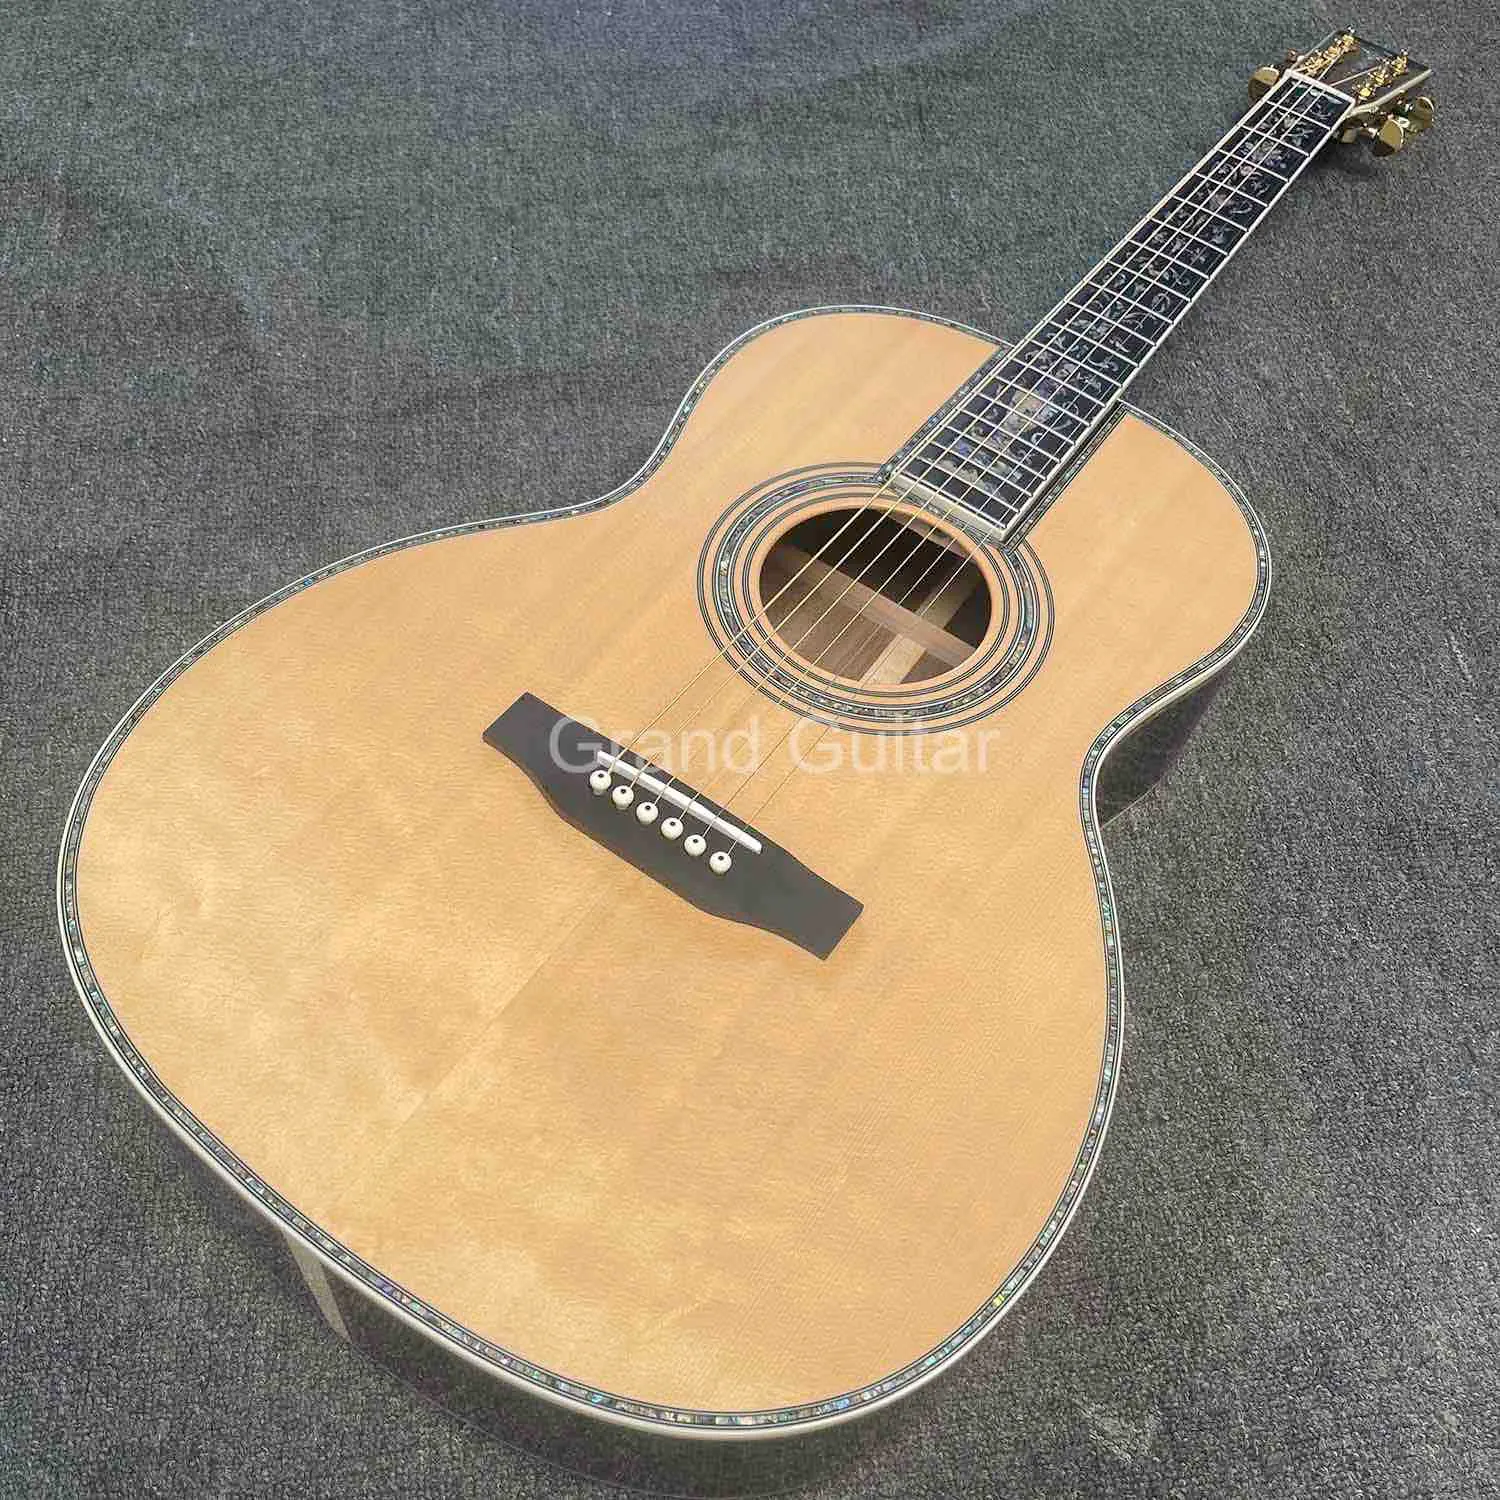 Katı Avrupa Ladin Ahşap 39 inç akustik gitar ooo vücut tarzı yaşam ağacı kibar klasik folk gitar abalon bağlama